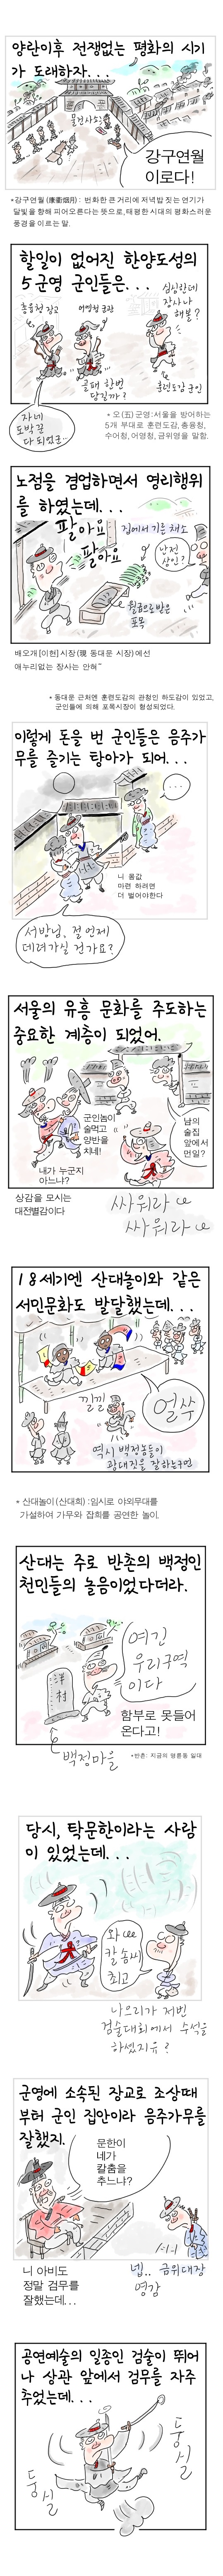  [역사툰] 史(사)람 이야기 19화: 조선 제일 춤꾼, 탁문한
